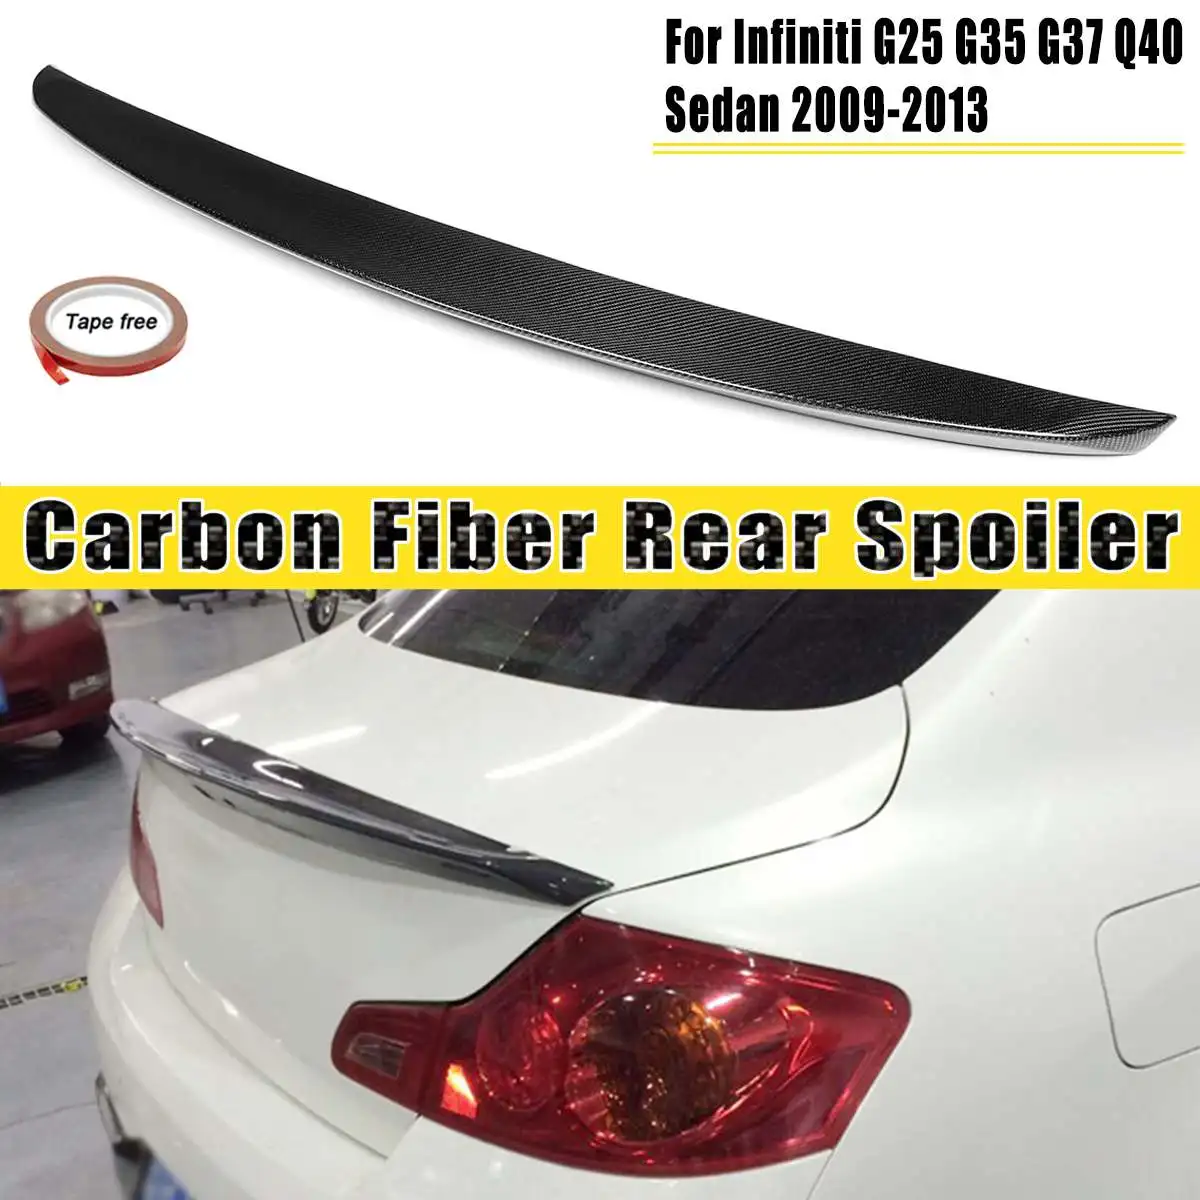 

Real Carbon Fiber Duckbill Car Trunk Spoiler Wing Lid Spoiler Wing For Infiniti G25 G35 G37 Q40 Sedan 2007-2015